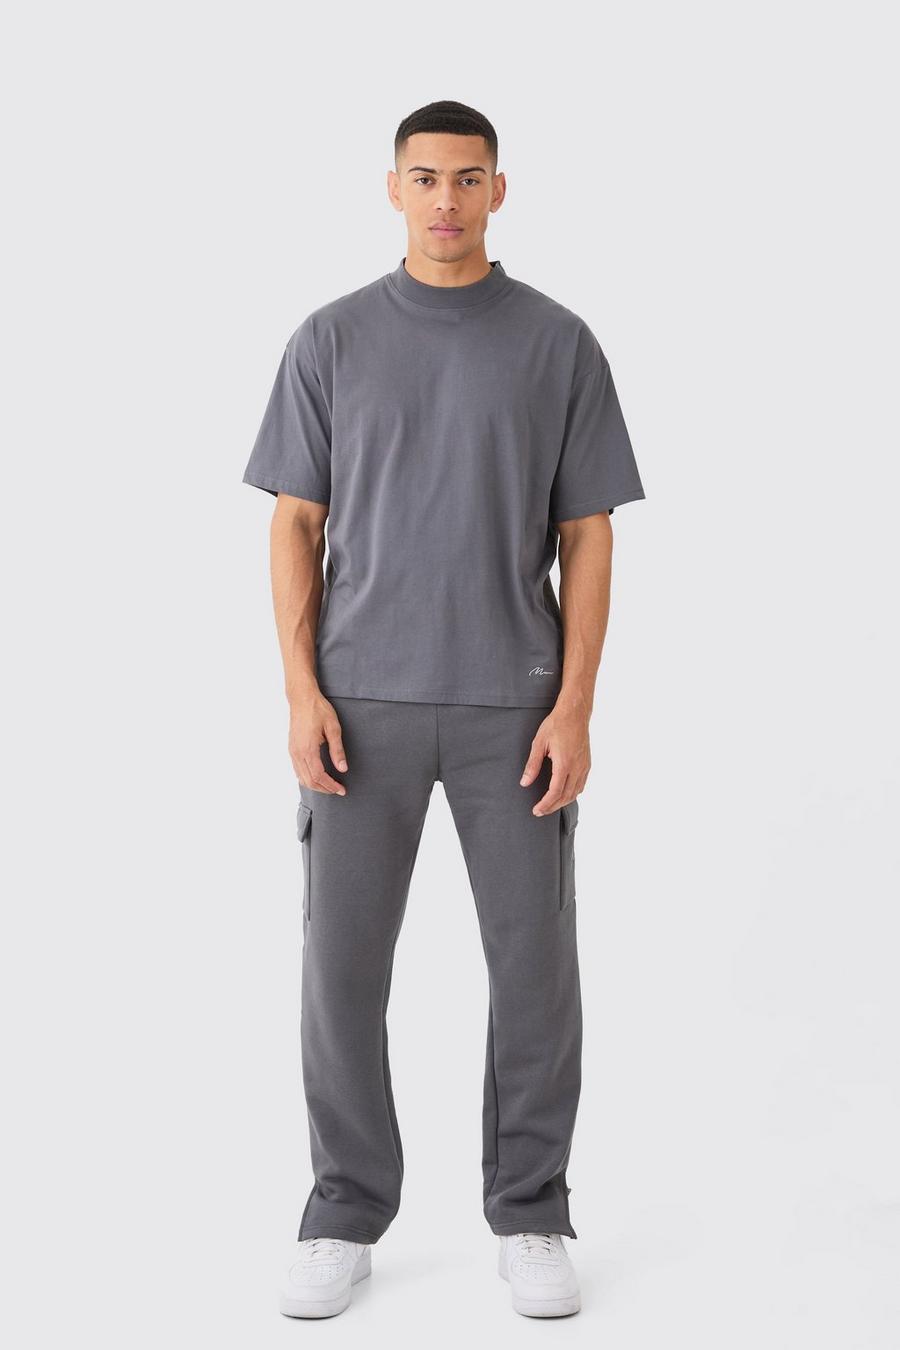 Ensemble oversize avec t-shirt et jogging - MAN, Charcoal image number 1